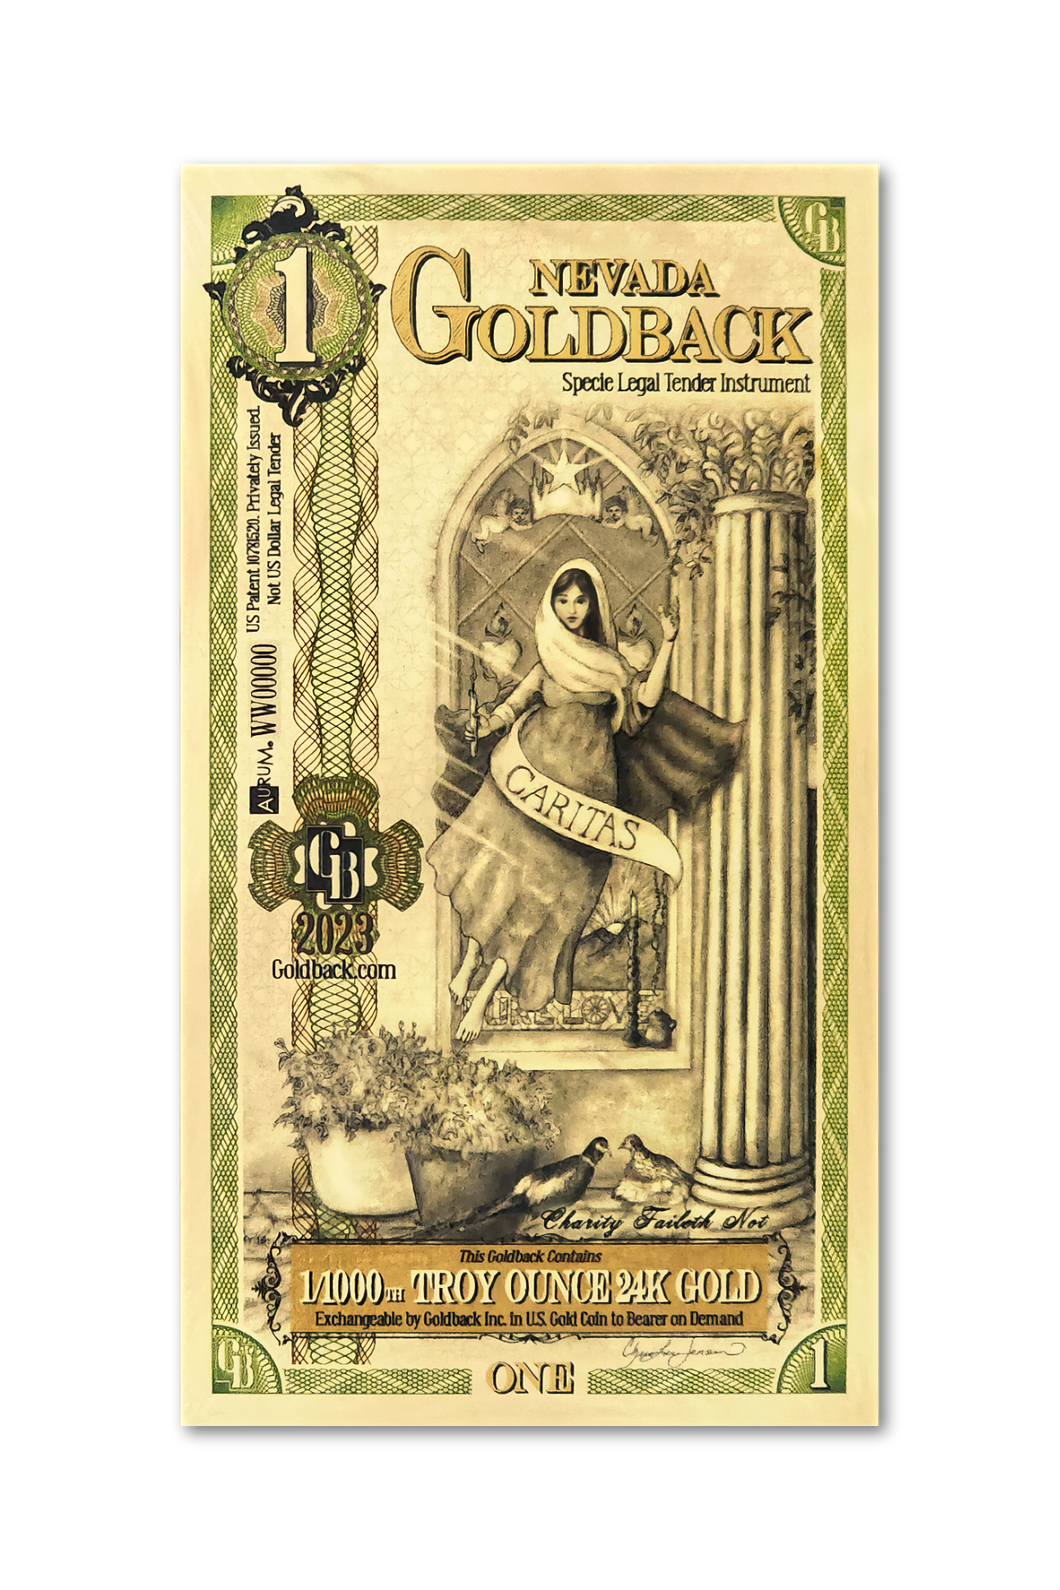 1 Nevada Goldback (20 Pack) - Aurum Gold Note (24k)- Zion Metals